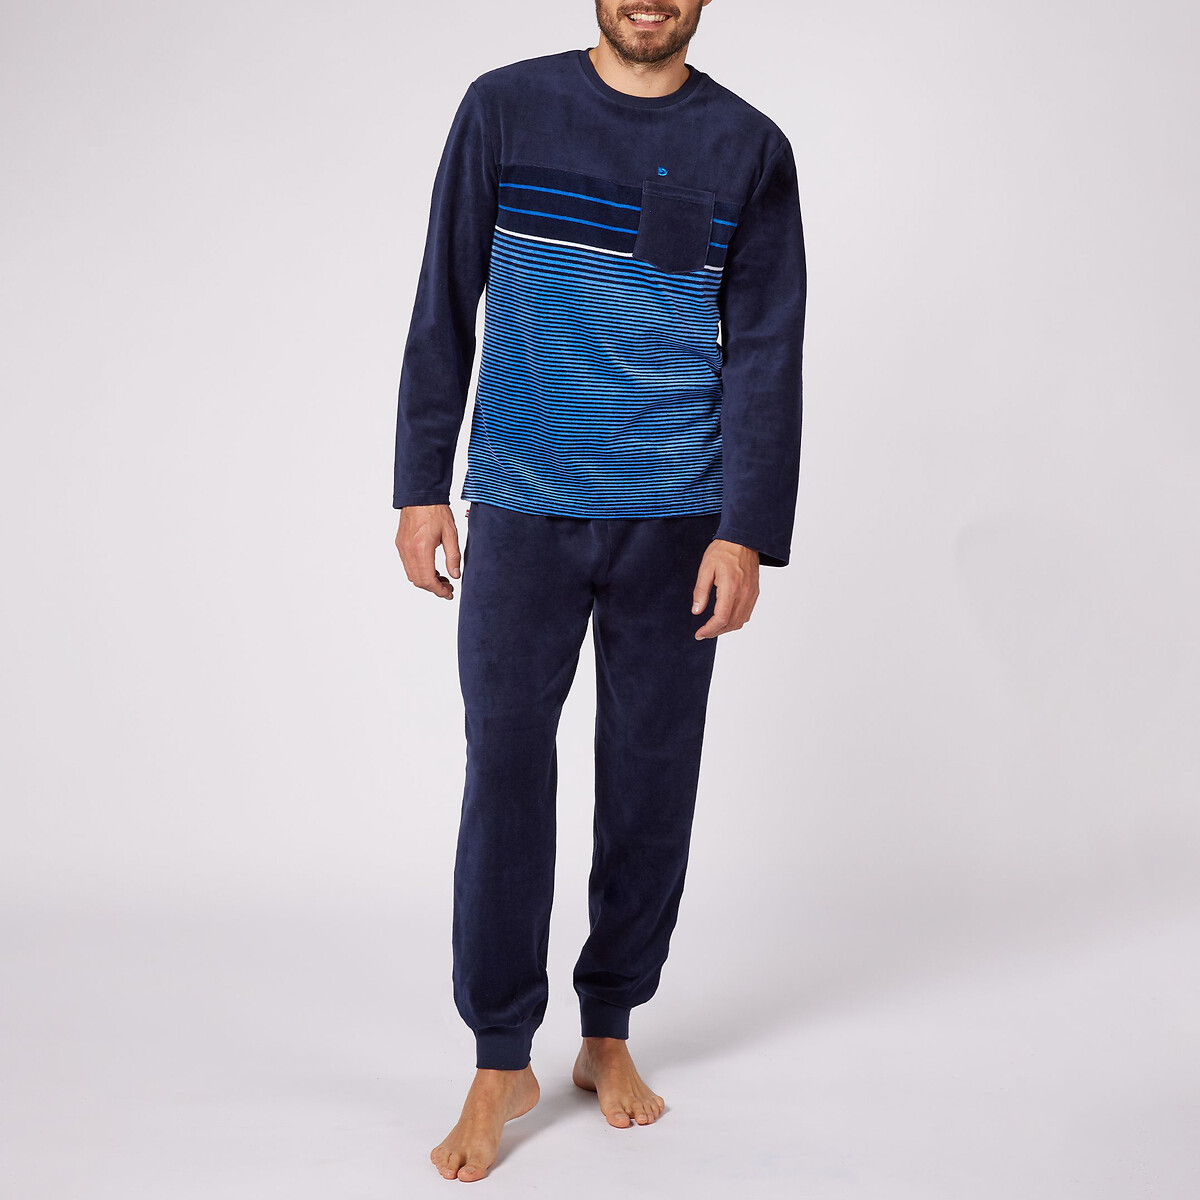 Пижама С верхом в полоску и длинными рукавами Bonjour M синий LaRedoute, размер M